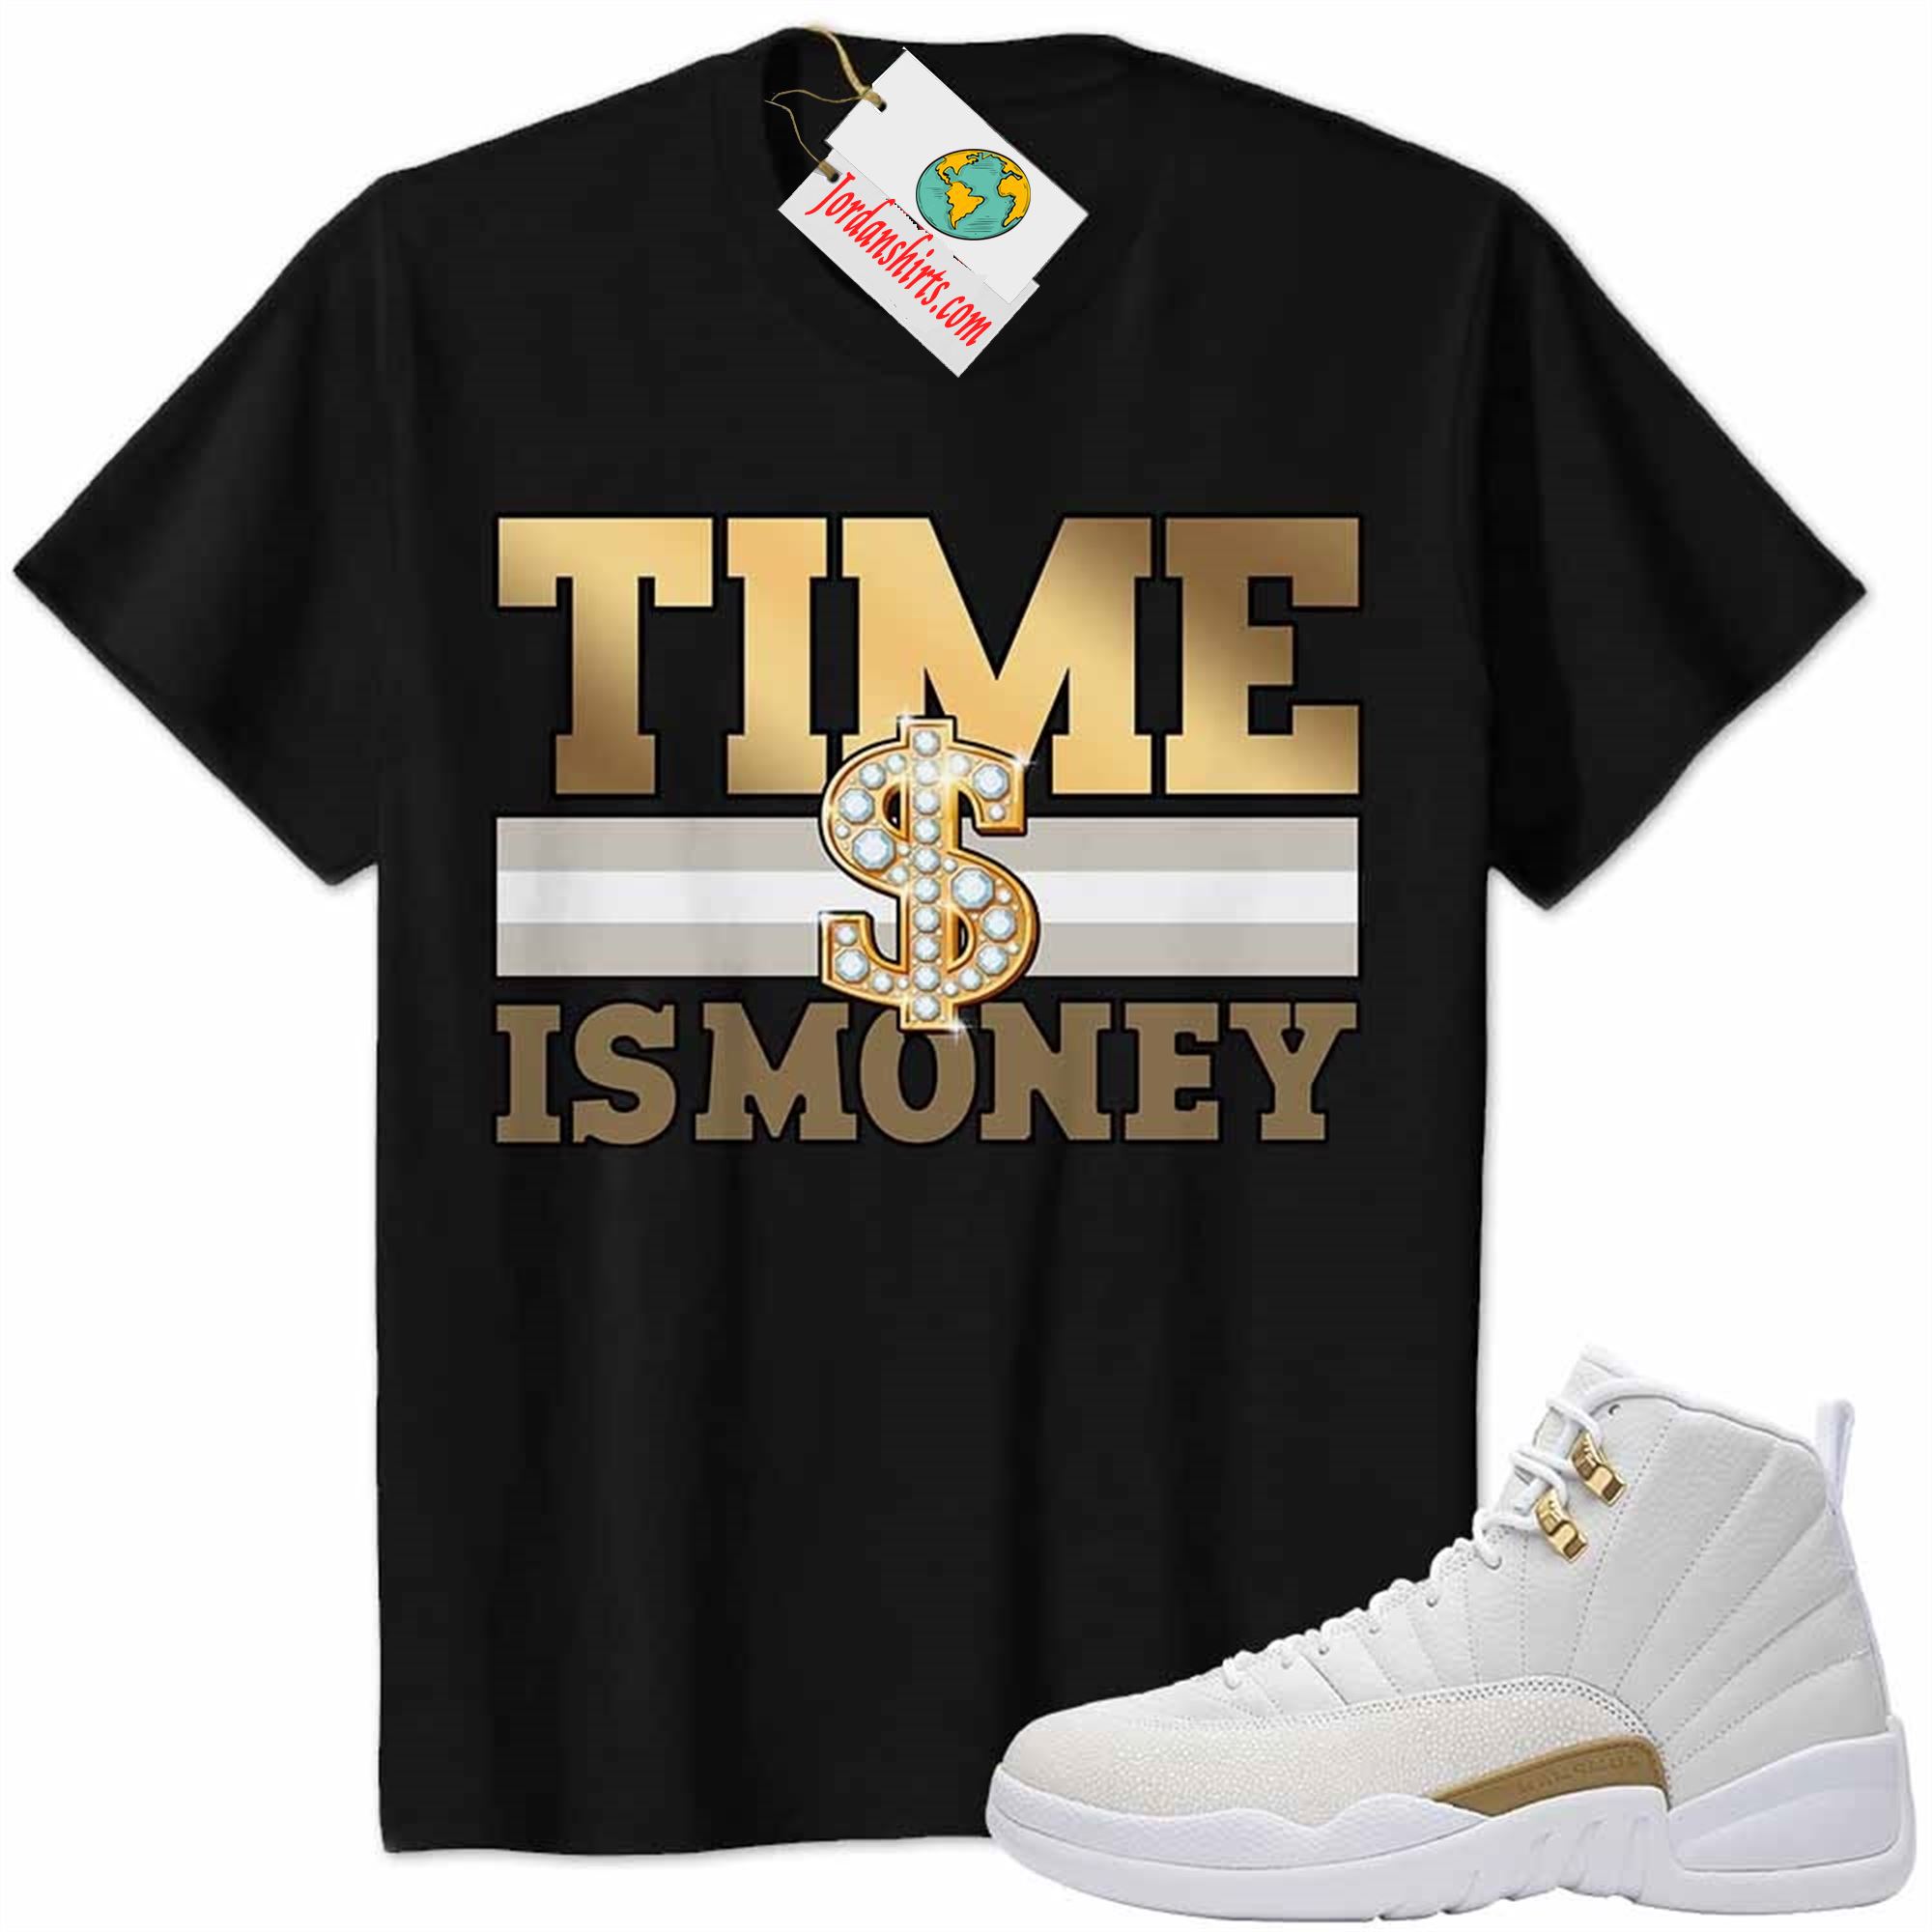 Jordan 12 Shirt, Time Is Money Dollar Sign Black Air Jordan 12 Ovo 12s Size Up To 5xl